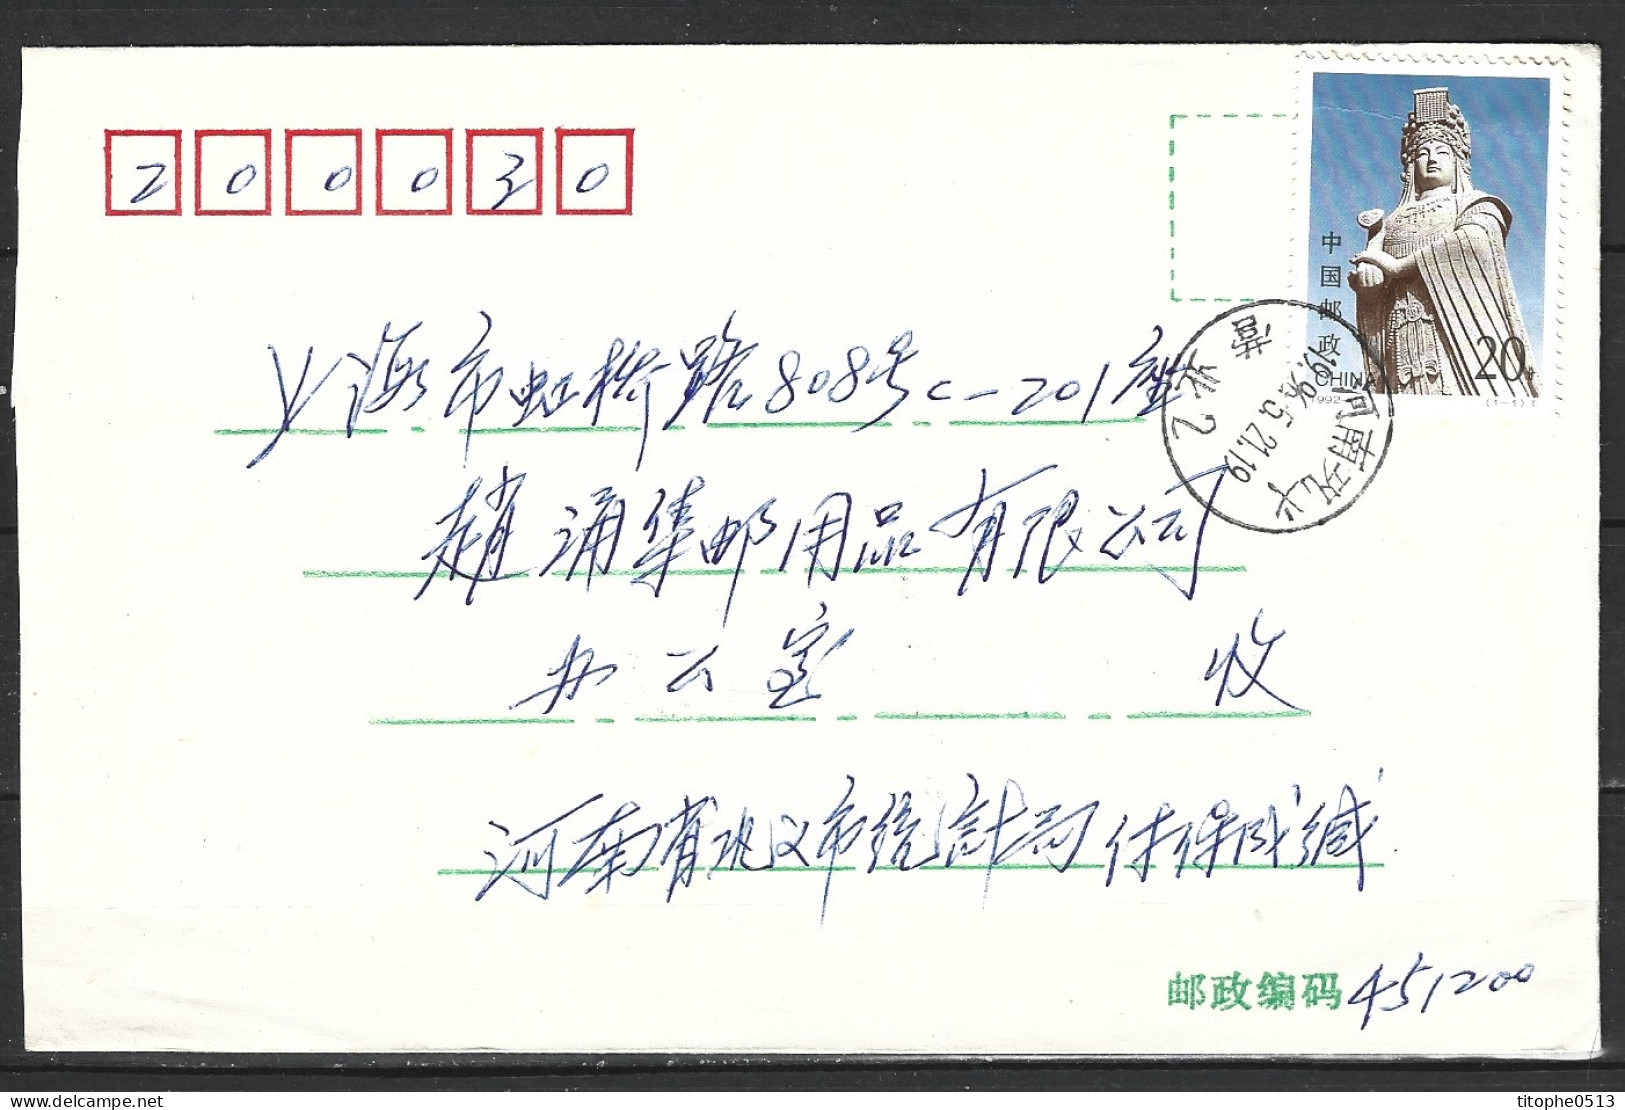 CHINE. N°3137 De 1992 Sur Enveloppe Ayant Circulé. Déesse Mazu. - Mythology